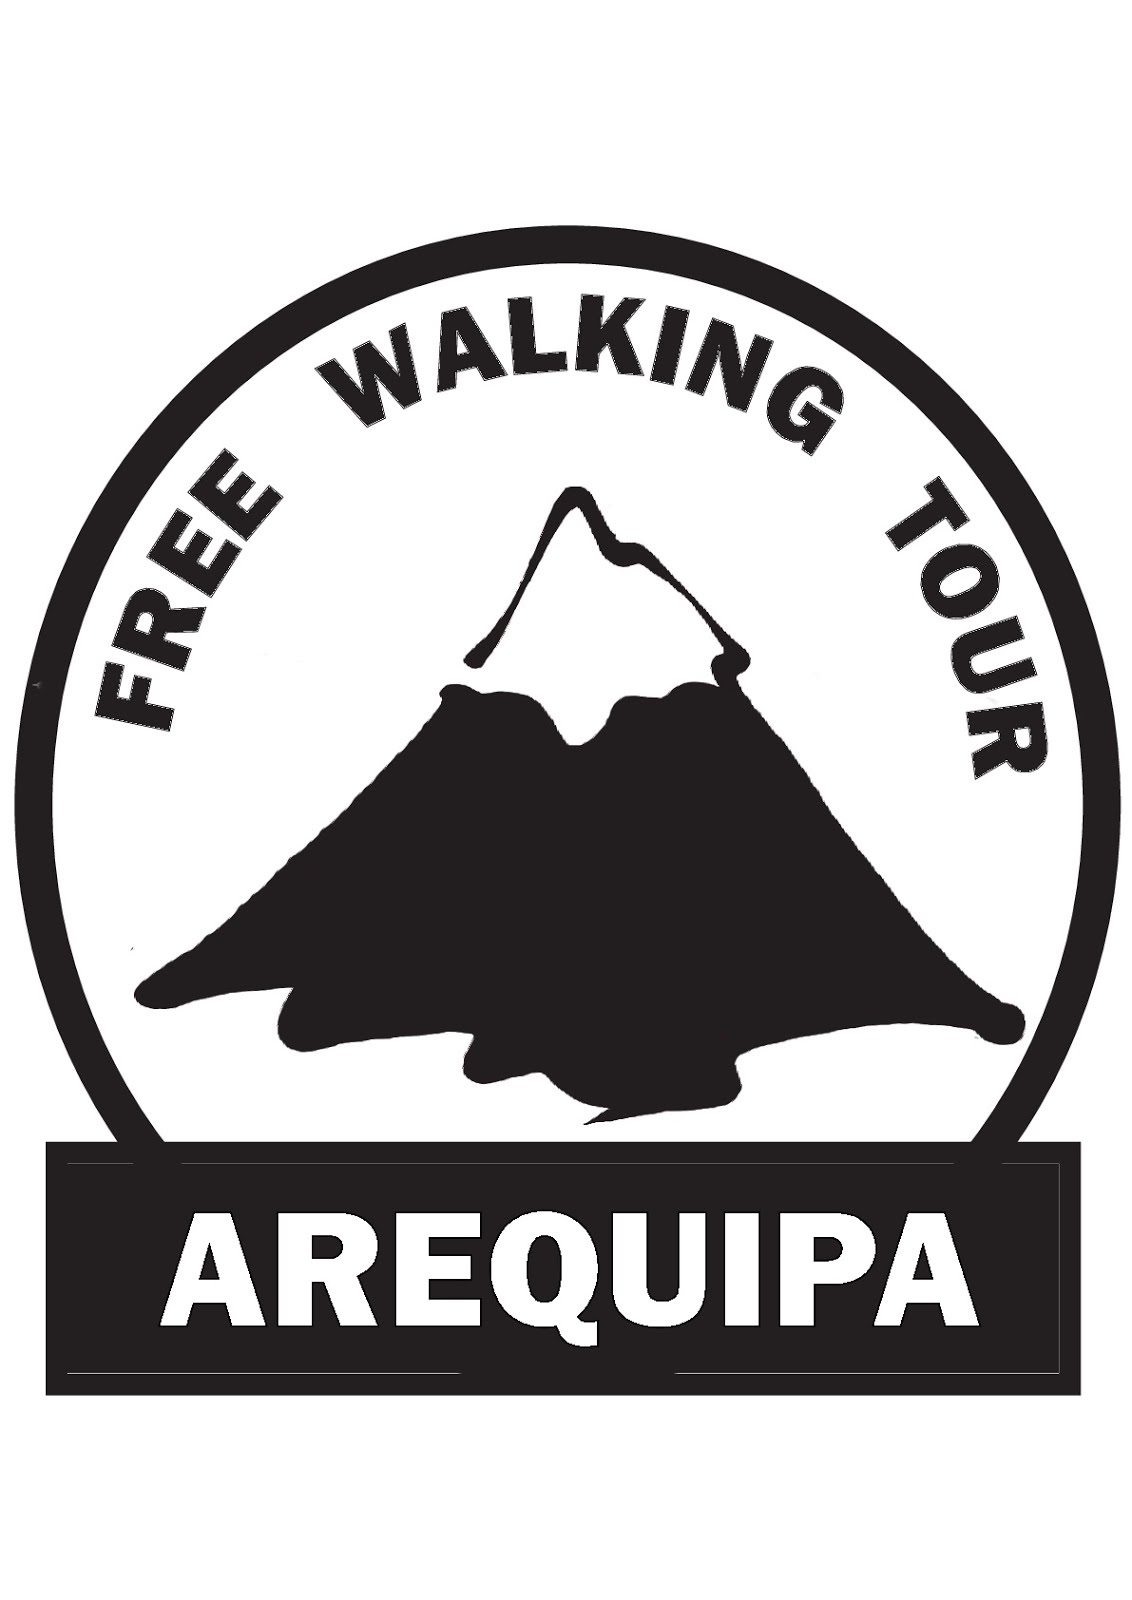 Free Walking Tour Arequipa